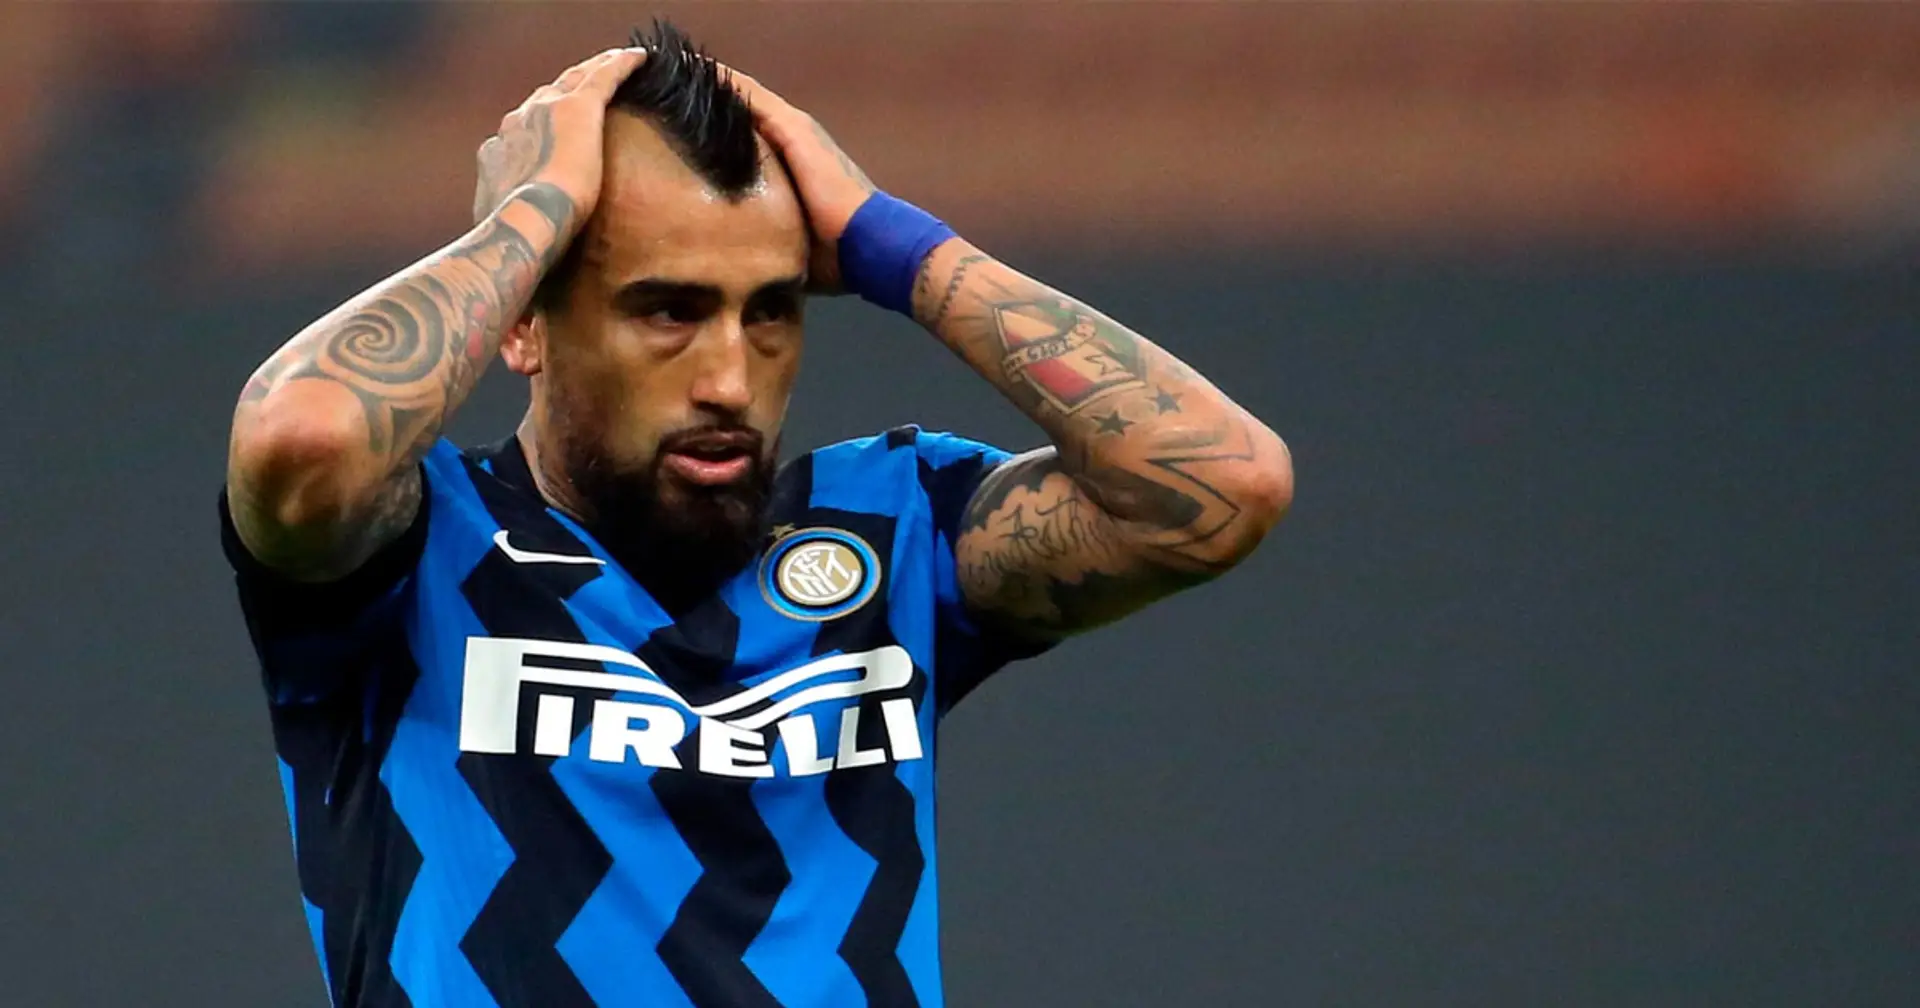 "Voglio restare all'Inter per vincere la Champions League", Vidal allontana le voci su un suo possibile addio